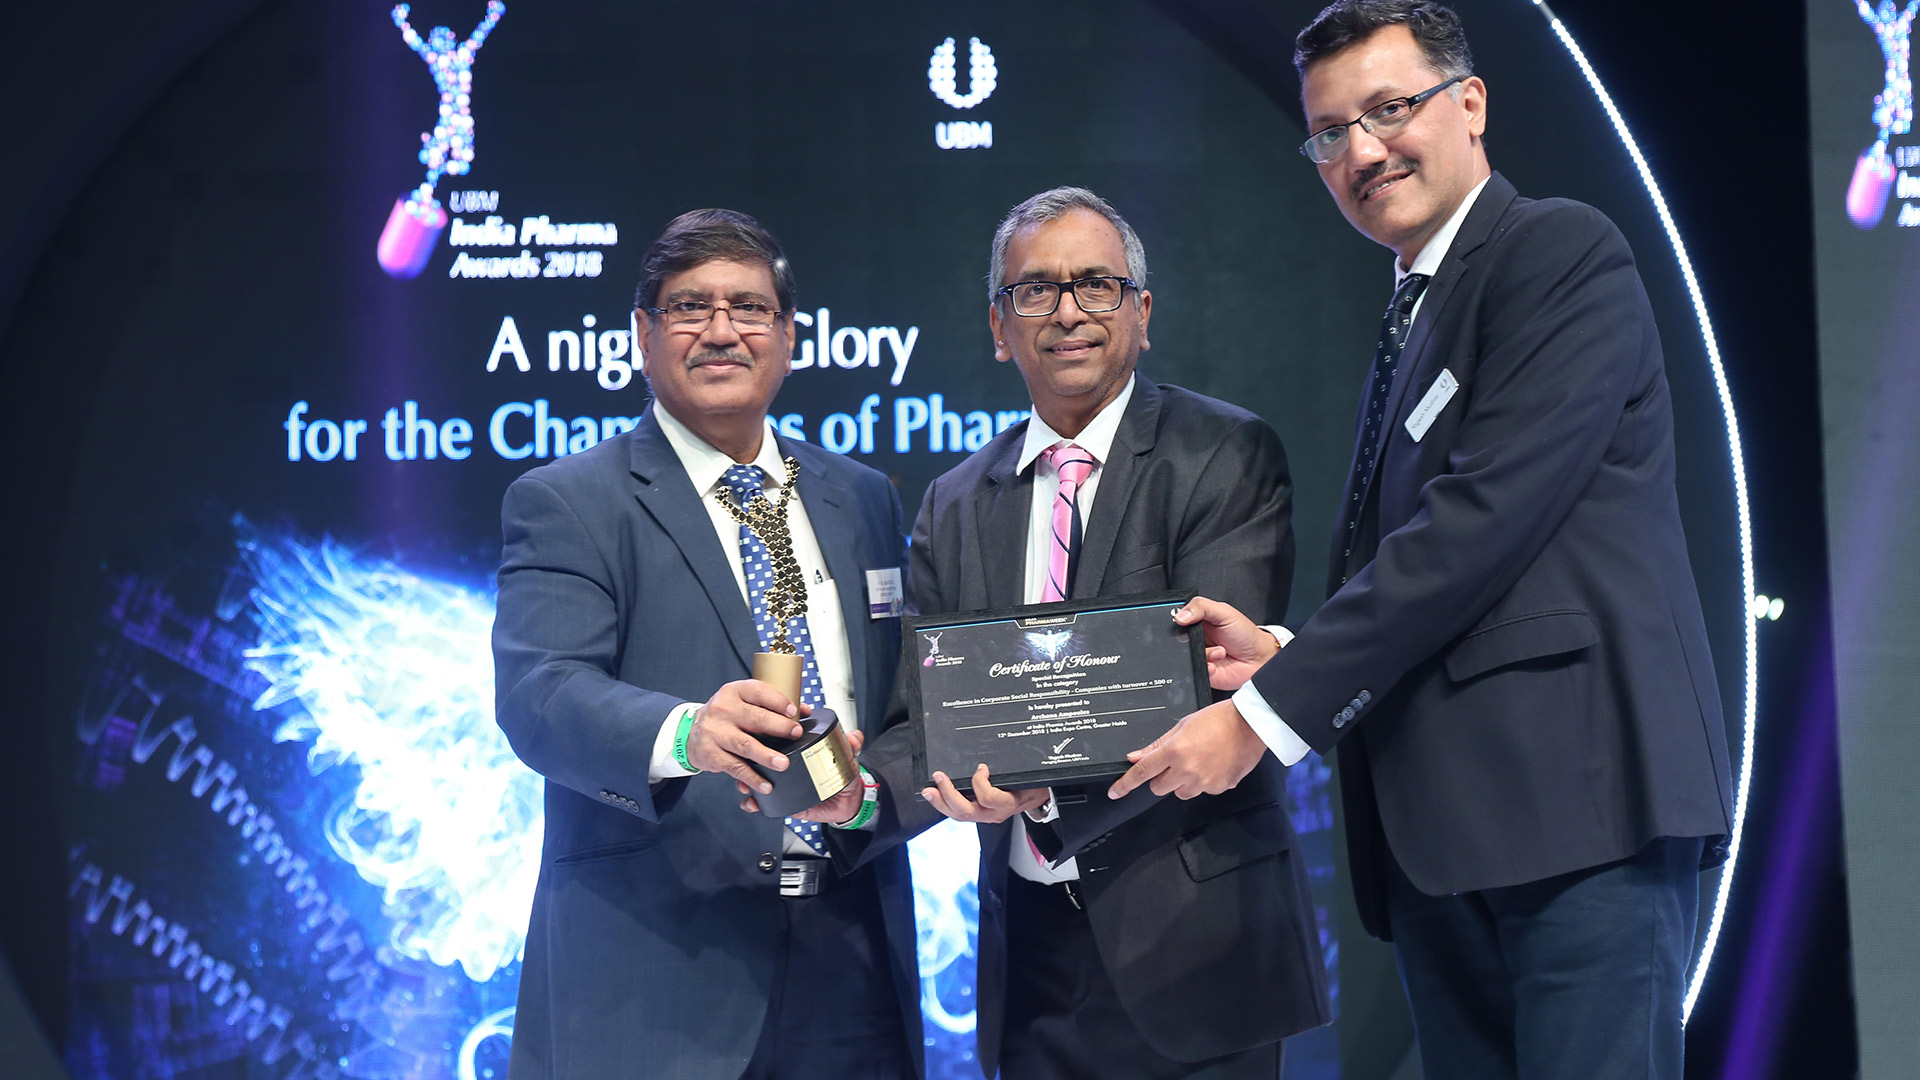 UBM India Pharma Awards 2018